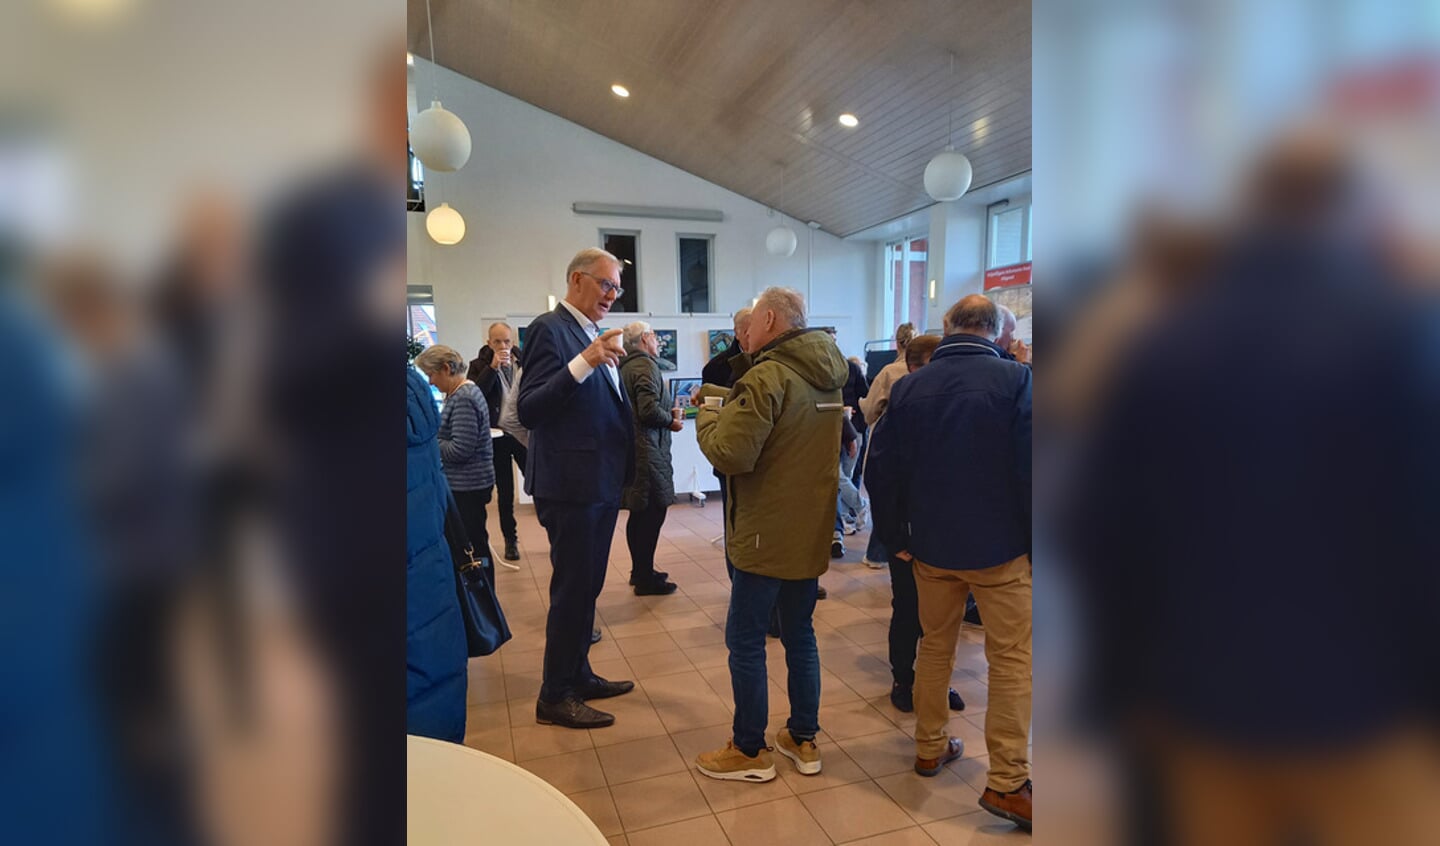 Wethouder Jan Schouten in gesprek met een belangstellende inwoner van Uitgeest.